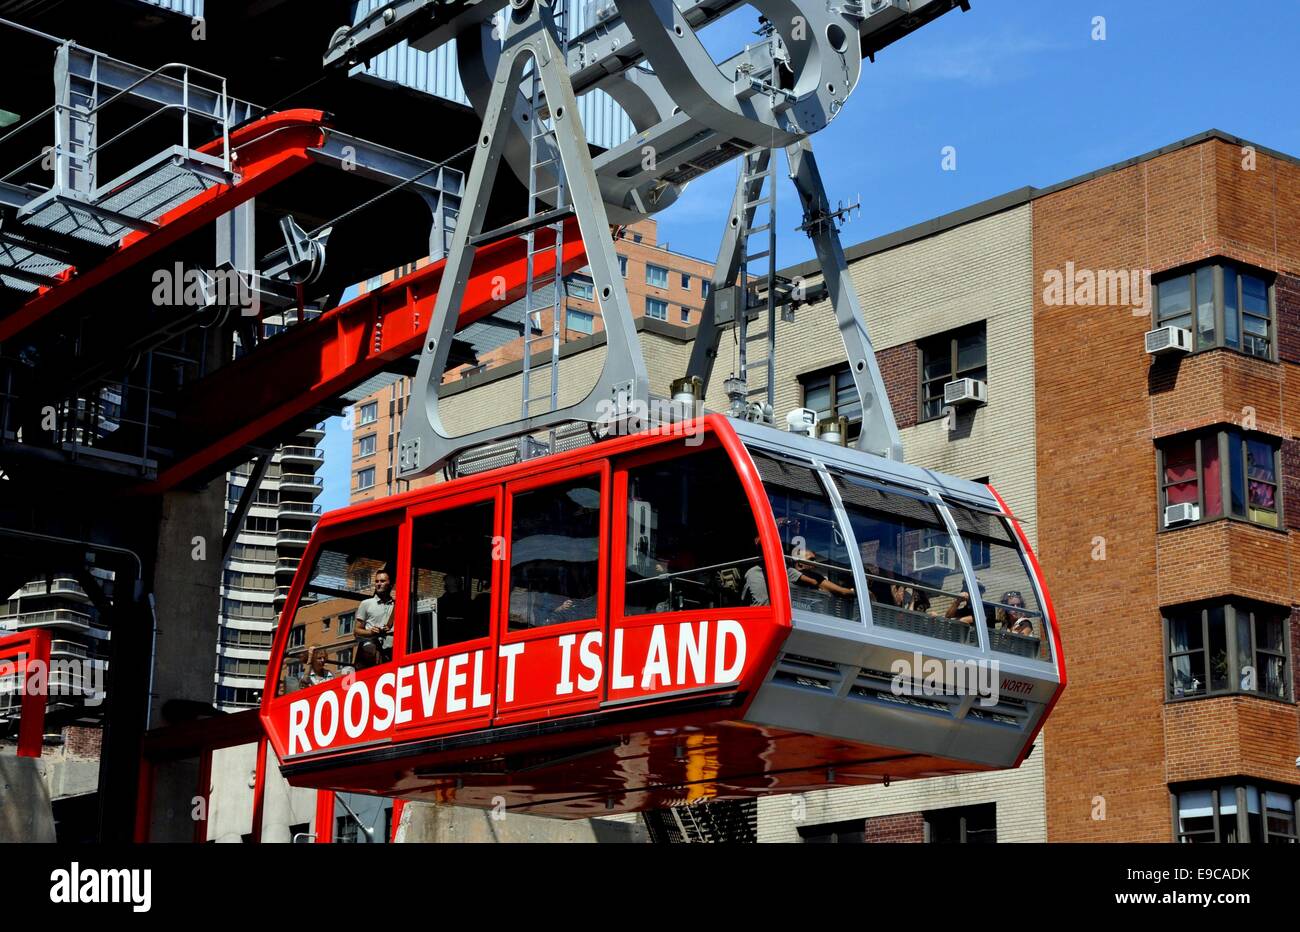 Paris : Le grand Roosevelt Island tramway rempli de passagers au départ de la 2e Avenue et East 59th Street station Banque D'Images